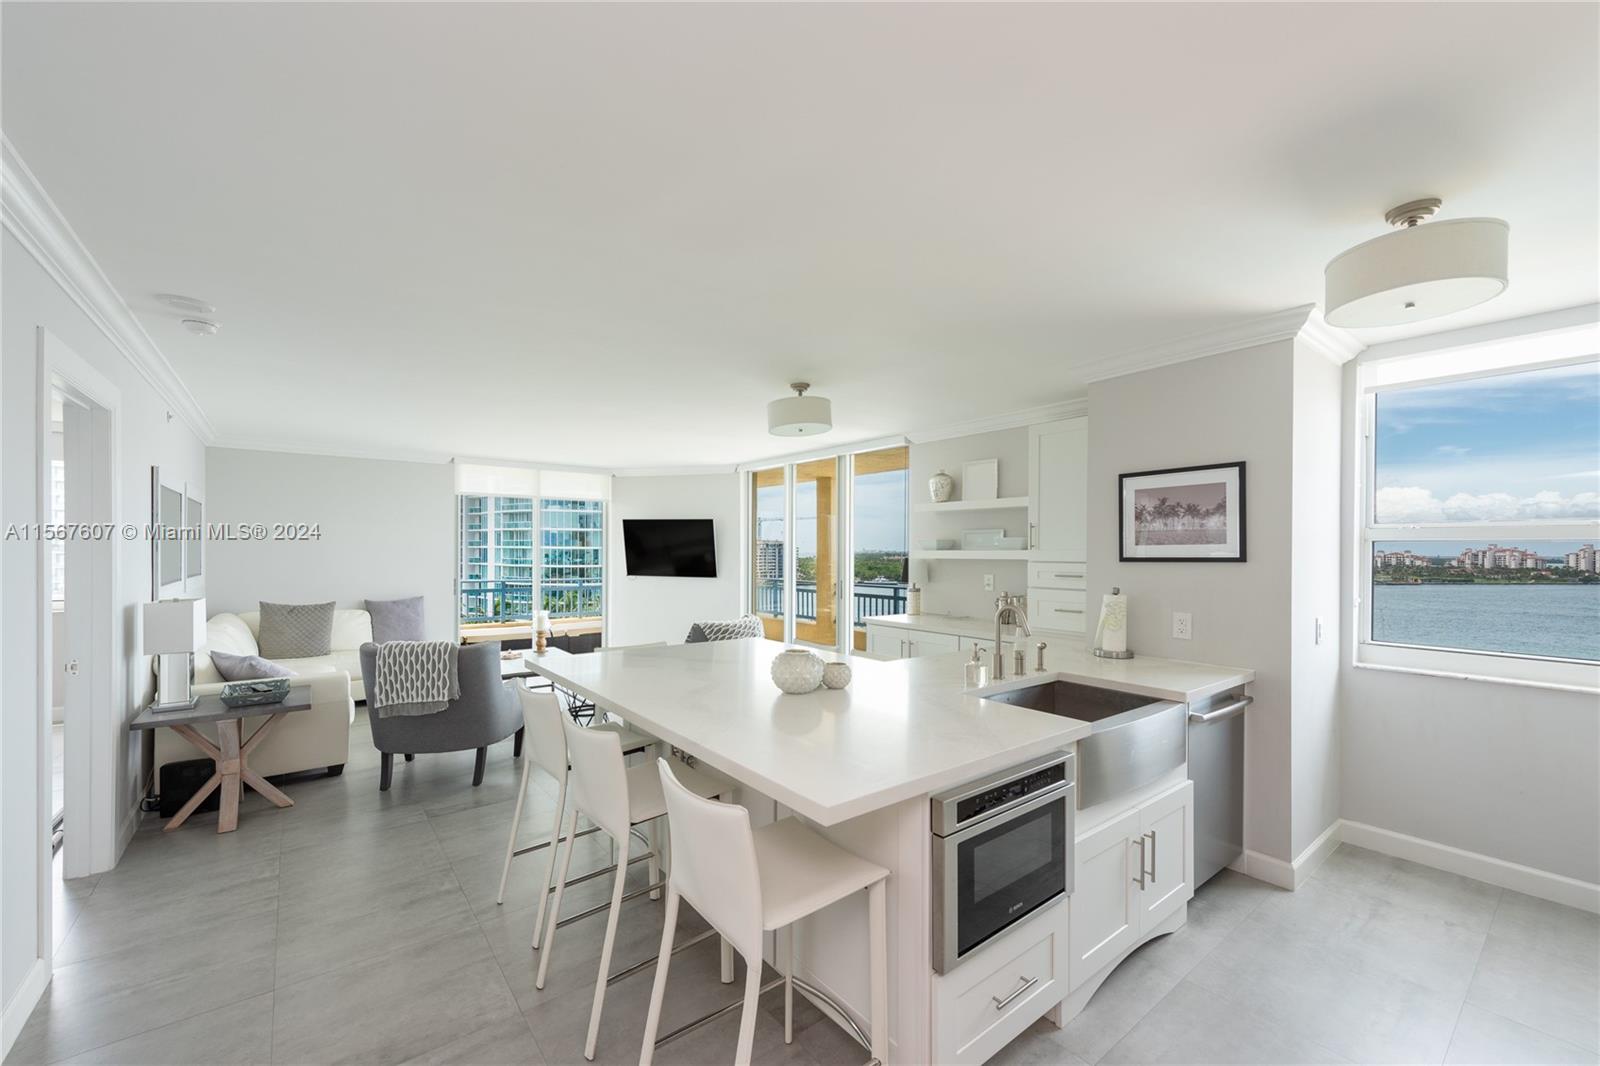 Rental Property at 90 Alton Rd 1102, Miami Beach, Miami-Dade County, Florida - Bedrooms: 2 
Bathrooms: 2  - $6,500 MO.